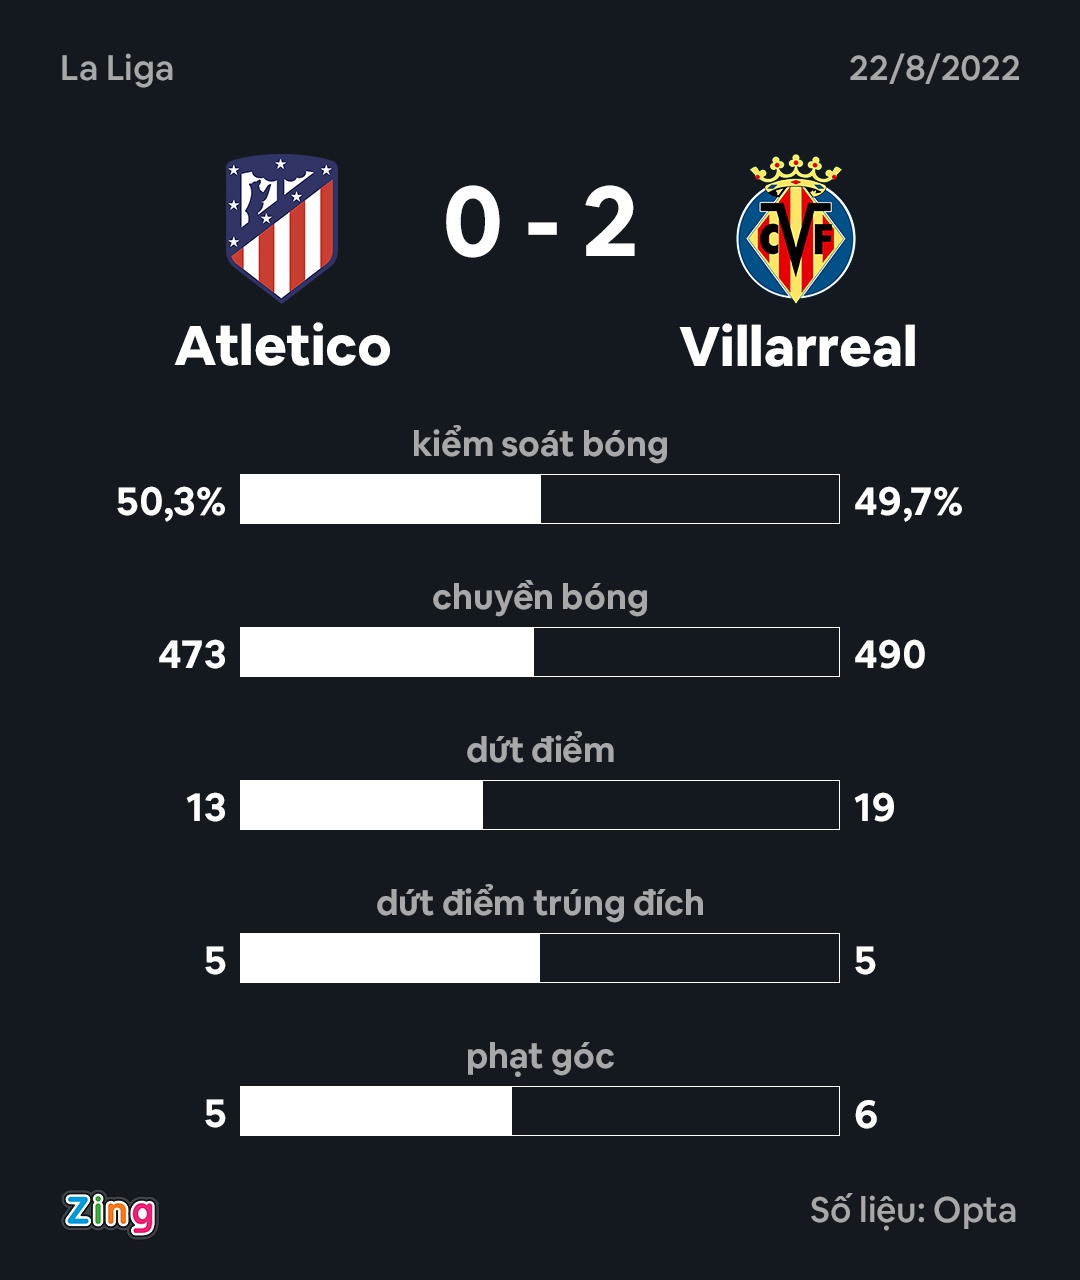 Thống kê sau trận cho thấy màn trình diễn kém cỏi của Atletico trước Villarreal. Đồ họa: Minh Phúc.